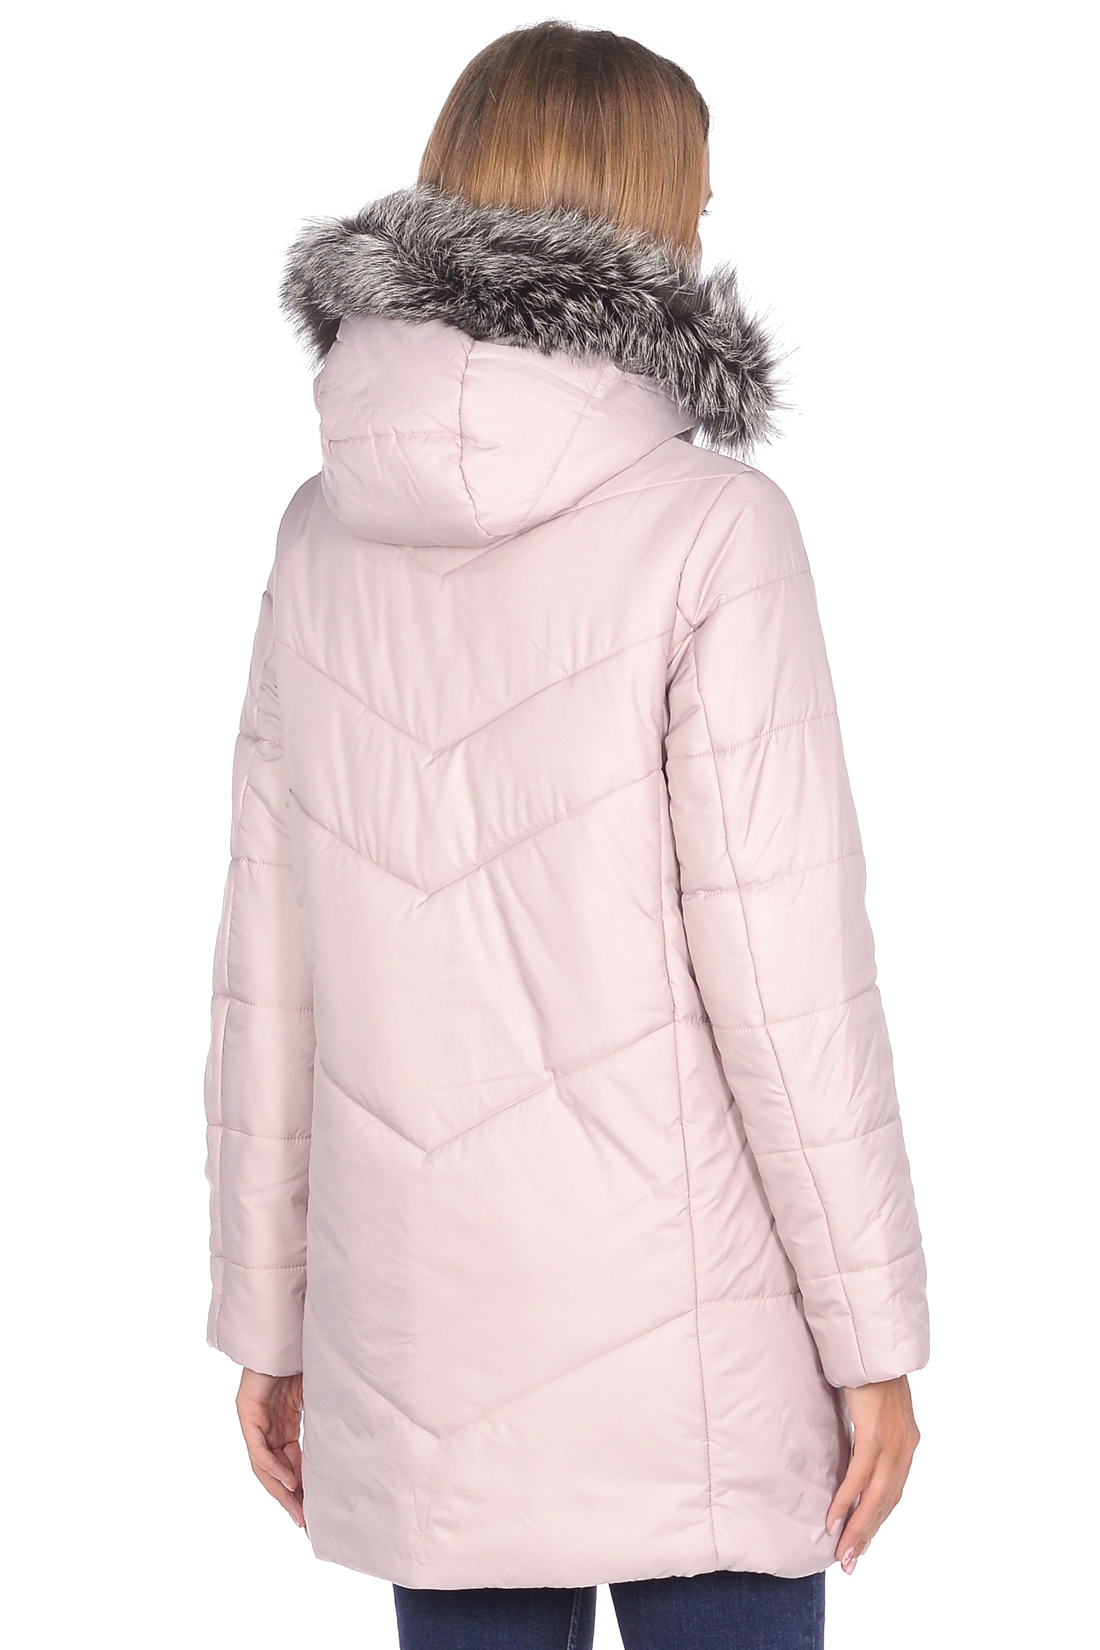 Куртка с мехом чернобурки (арт. baon B038562), размер XXL, цвет розовый Куртка с мехом чернобурки (арт. baon B038562) - фото 2